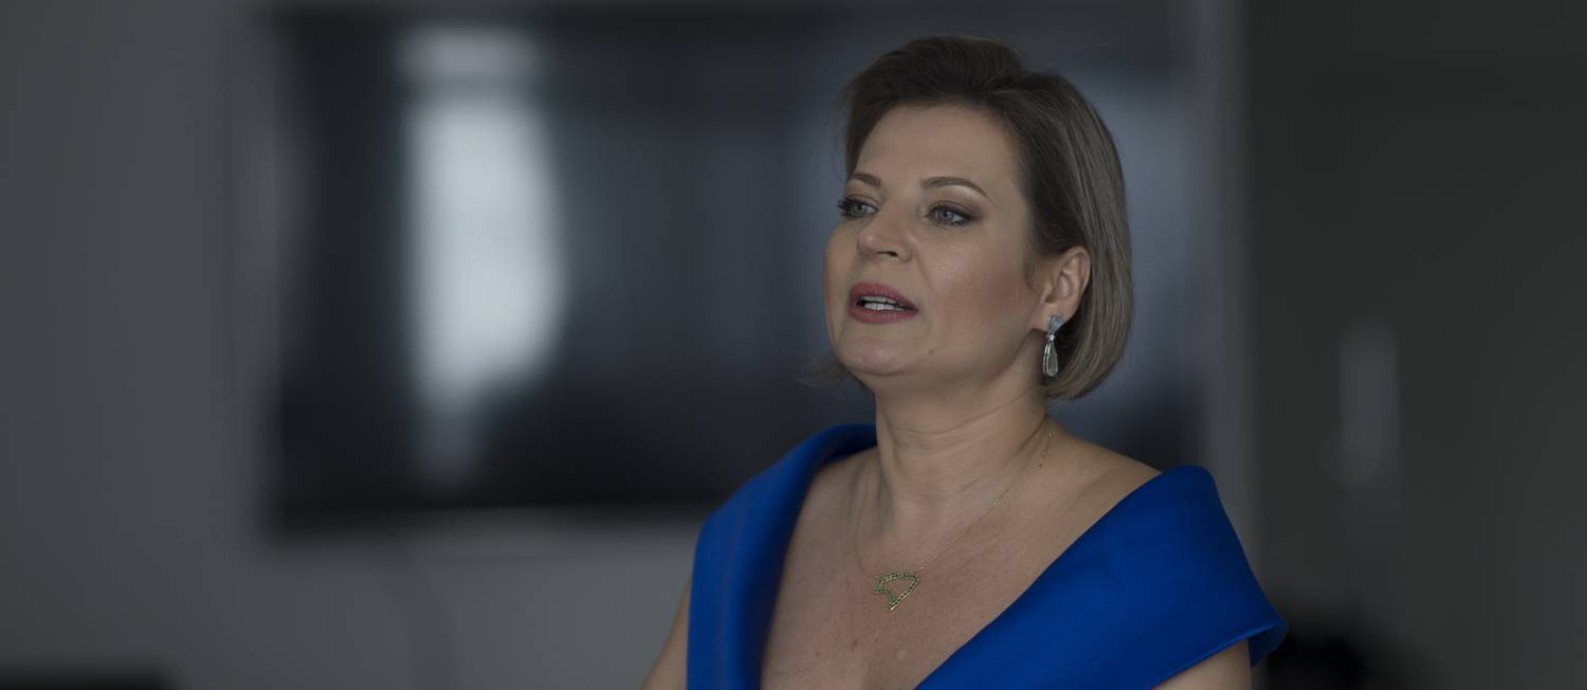 Meu cassetete não é limitado como o do Bolsonaro' diz Joice Hasselmann em  entrevista - Jornal O Globo